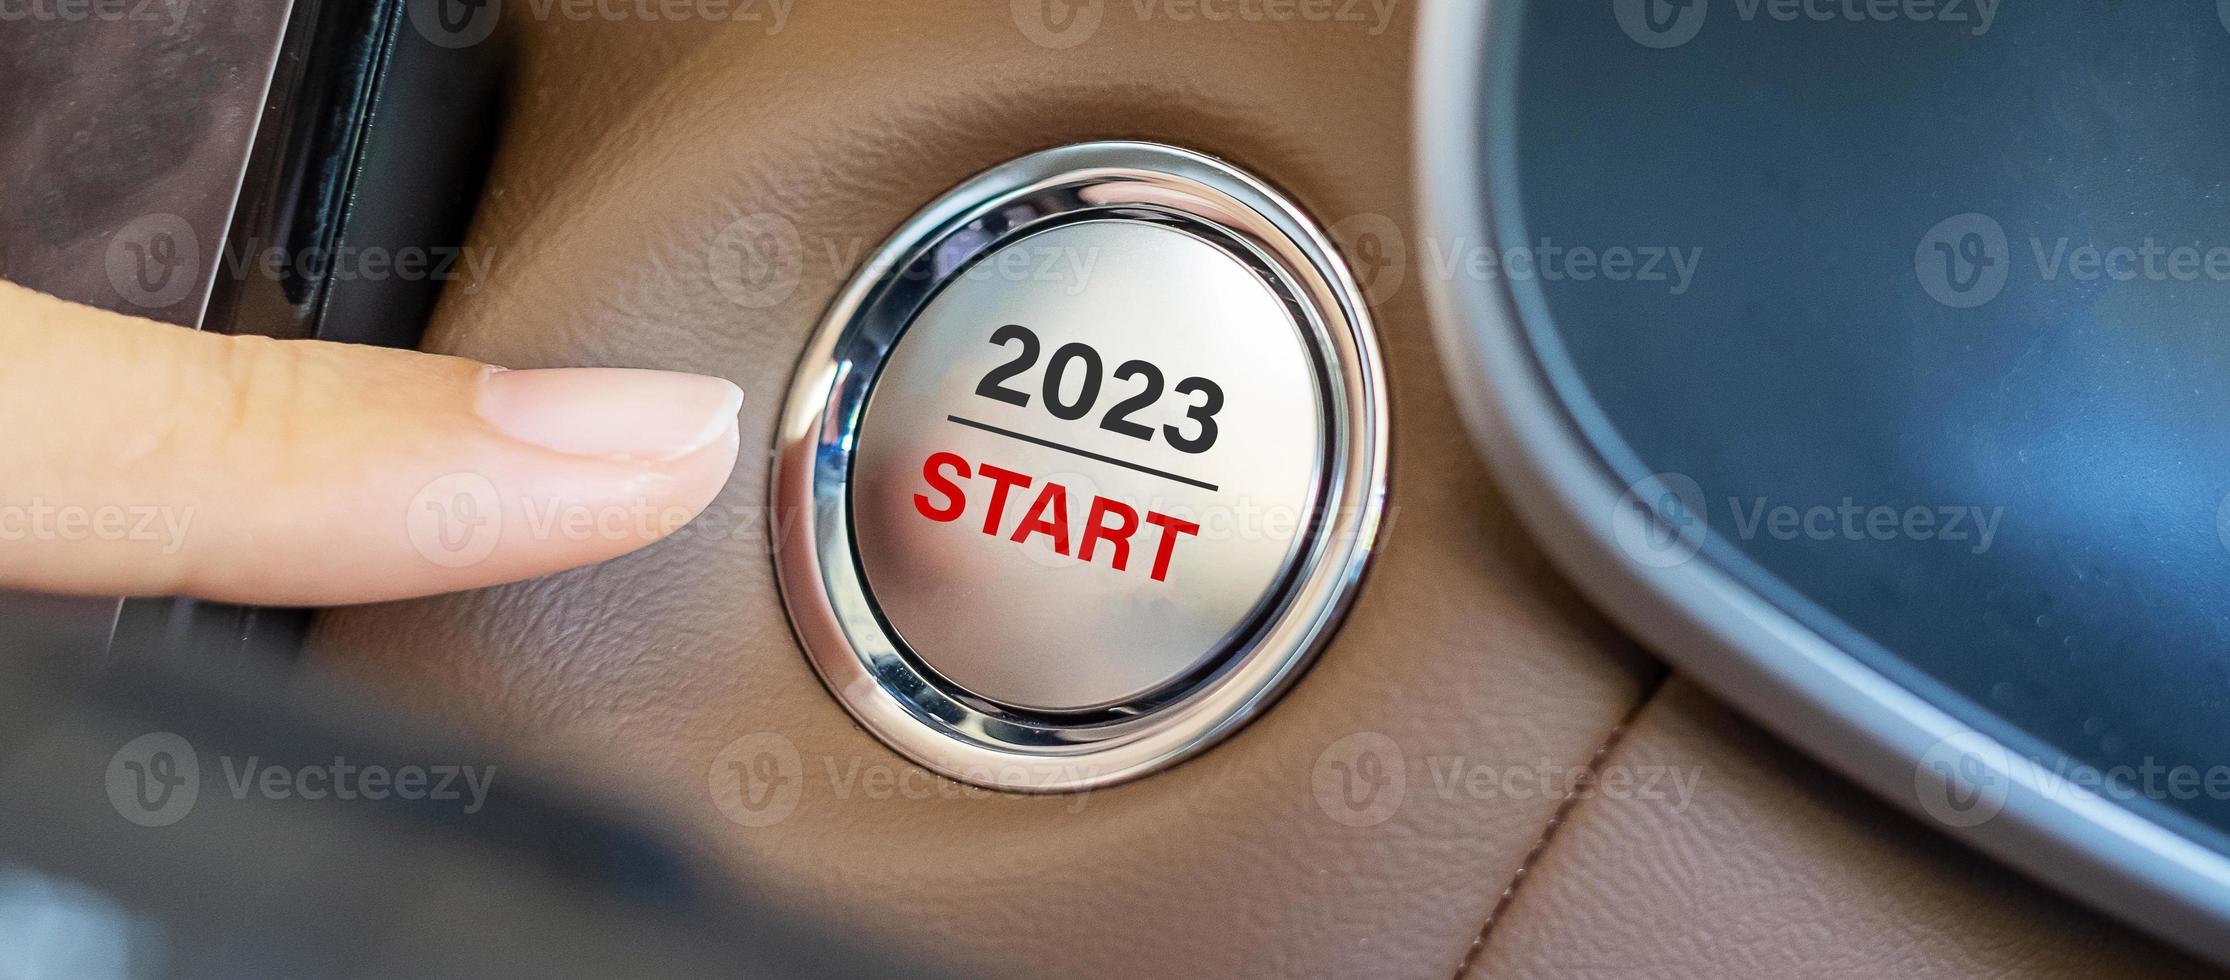 dedo pressione um botão de ignição do carro com o texto inicial de 2023 dentro do automóvel. ano novo novo você, previsão, resolução, motivação, mudança, objetivo, visão, inovação e conceito de planejamento foto